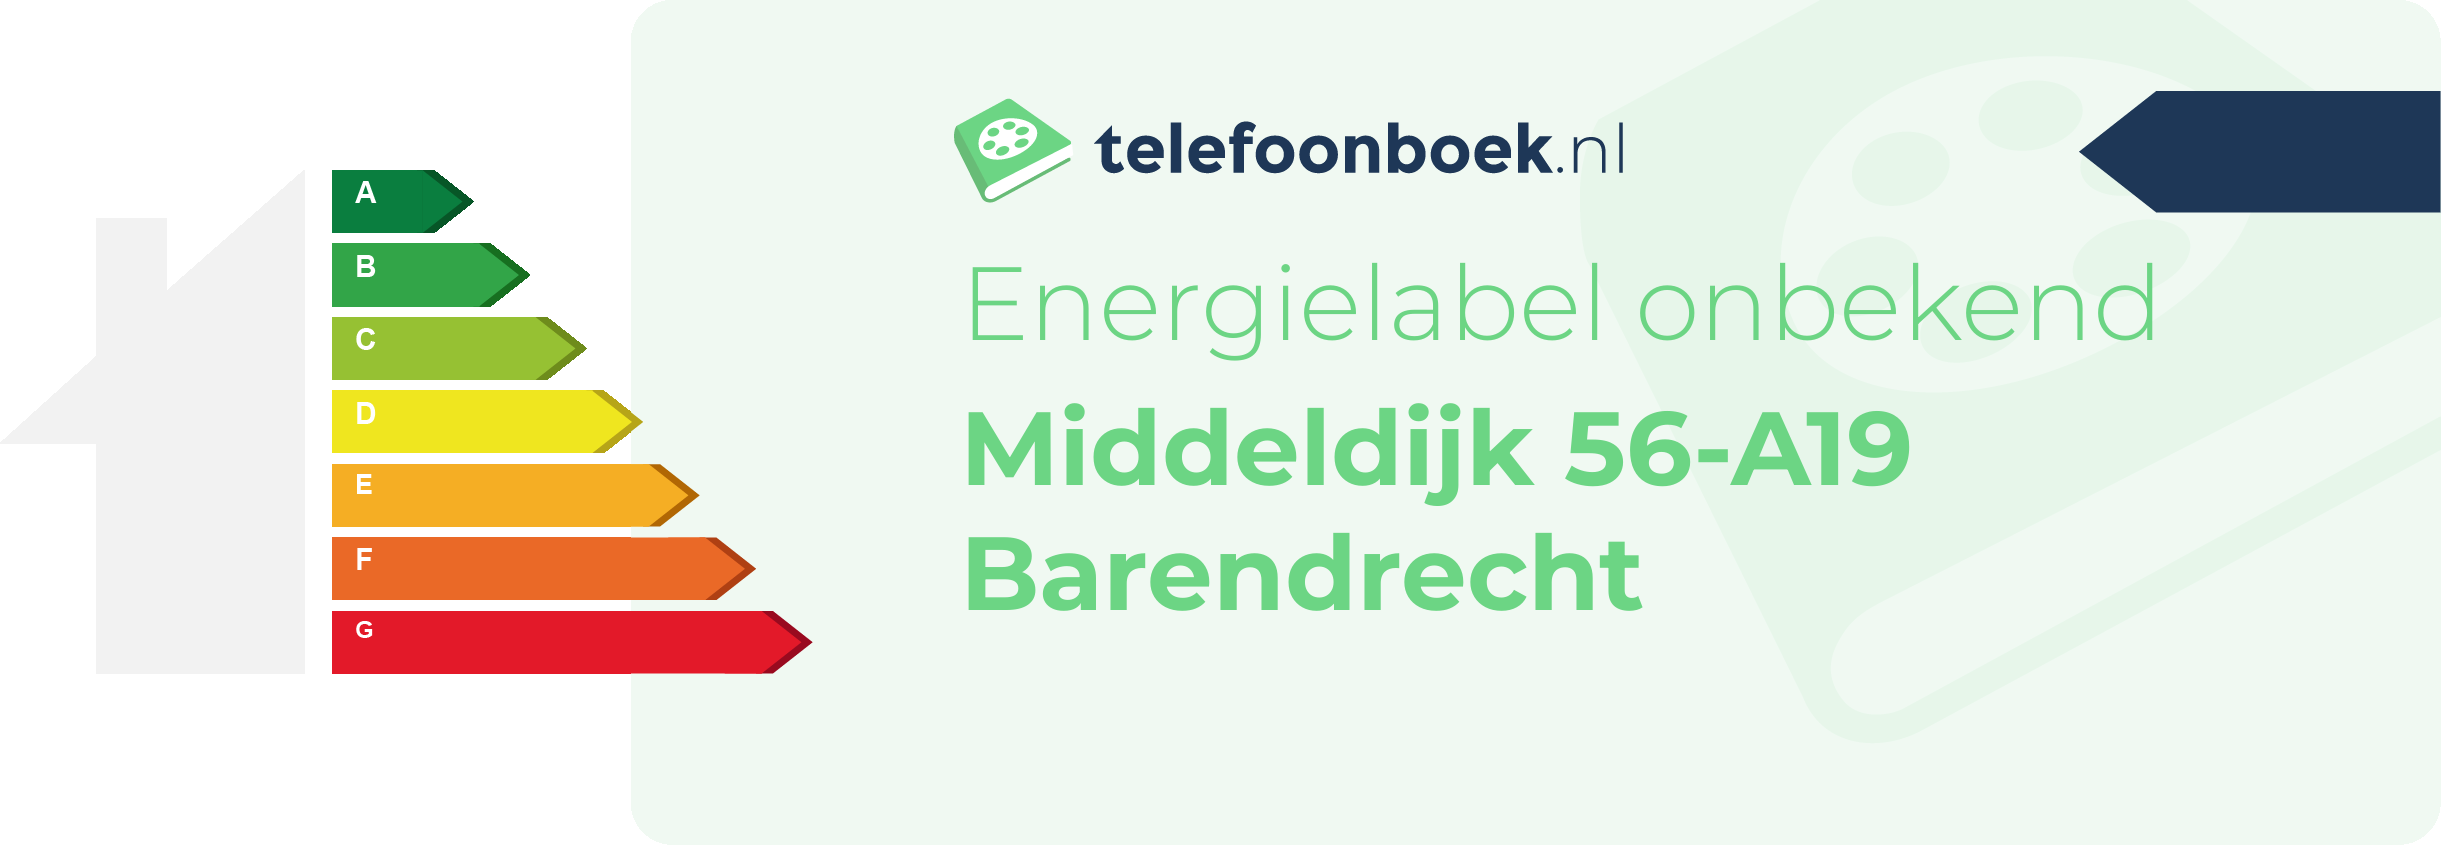 Energielabel Middeldijk 56-A19 Barendrecht